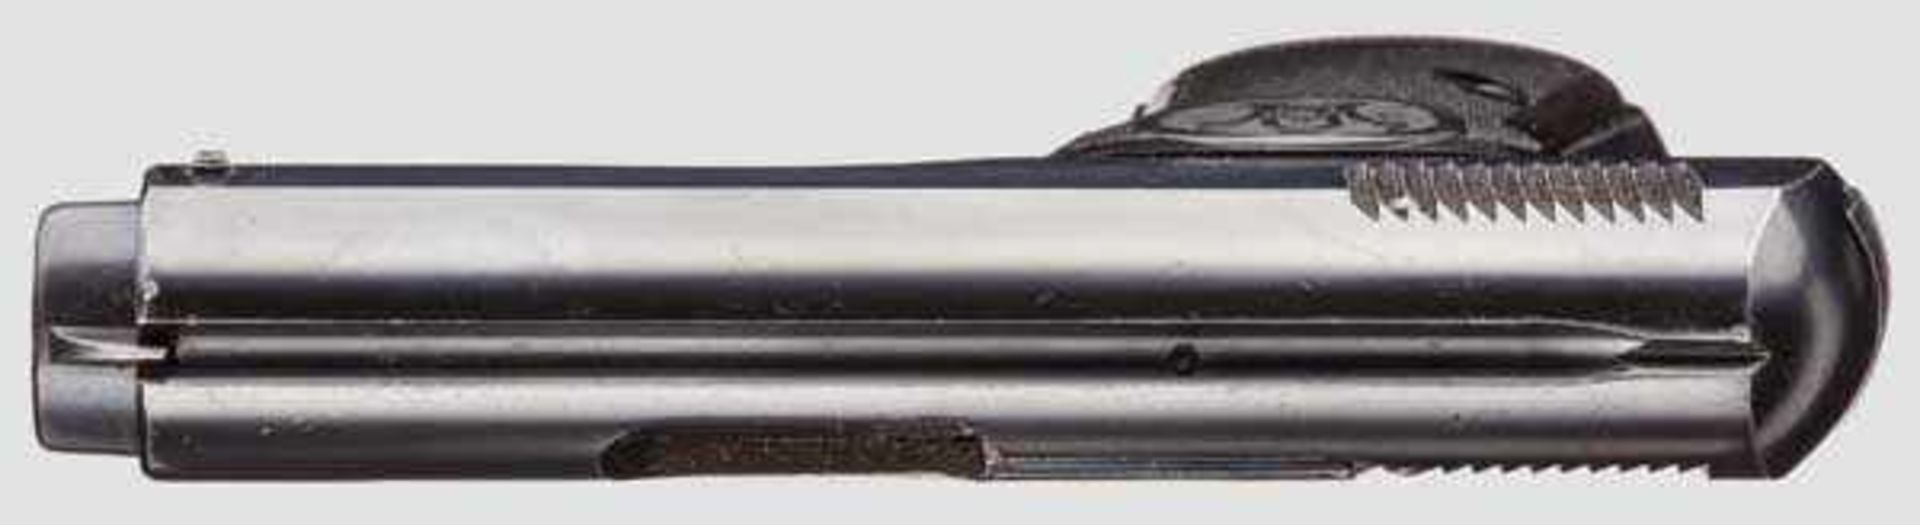 Walther Mod.3 Kal. 7,65 mm, Nr. 26399. Nummerngleich. Blanker Lauf. Sechsschüssig. Beschuss Krone/N. - Bild 3 aus 3